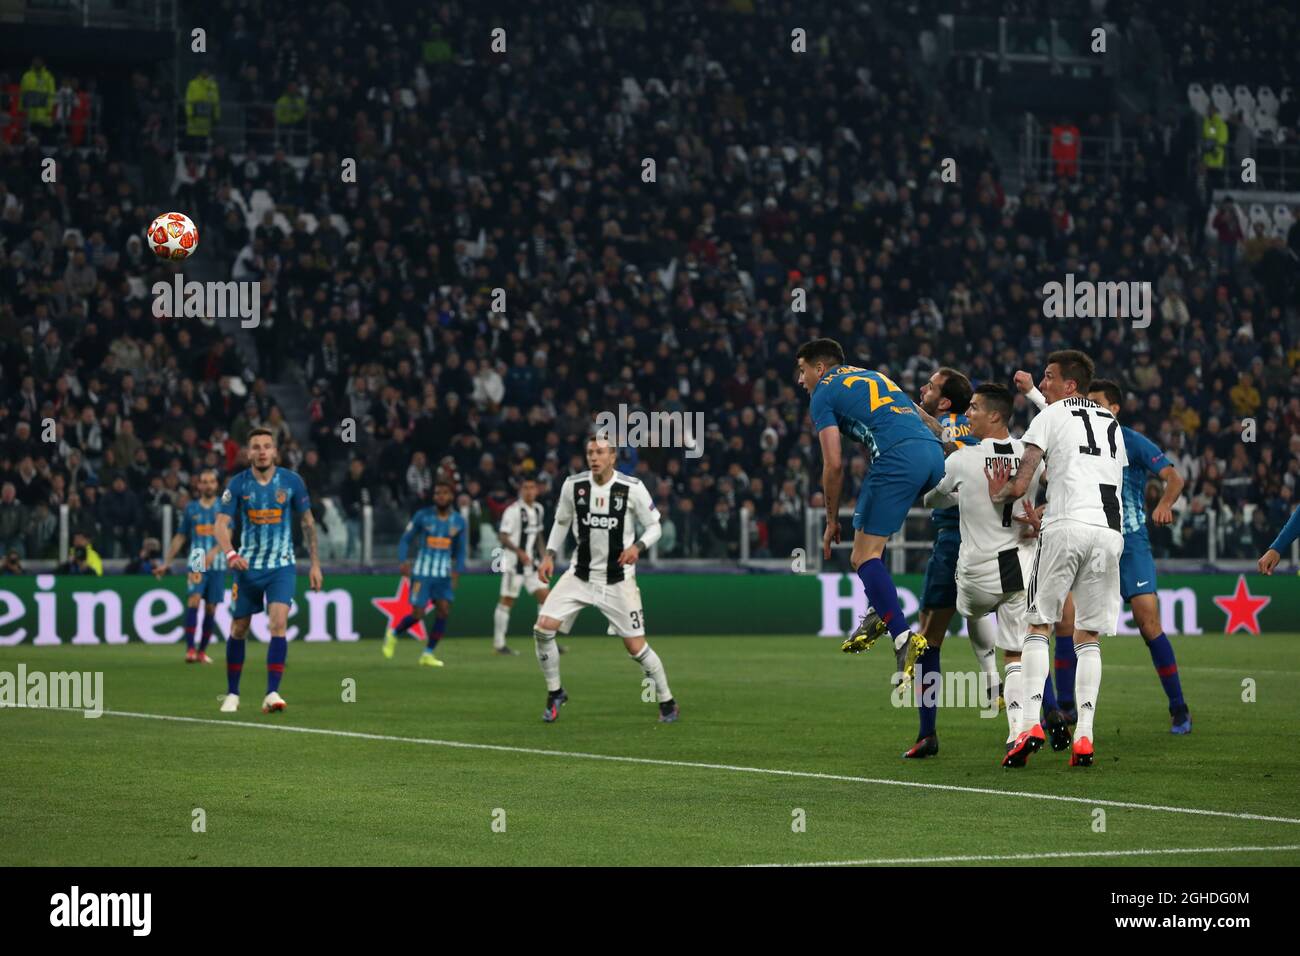 Cristiano Ronaldo von Juventus klettert über die Atletico Madrid Verteidigung, um den Ball ins Netz zu führen, um seiner Mannschaft in der Nacht während der UEFA Champions League Runde von 16 im Allianz Stadium, Turin, Italien, eine Führung von 2-0 zu geben. Bild Datum 12. März 2019. Bildnachweis sollte lauten: Jonathan Moscrop/Sportimage via PA Images Stockfoto